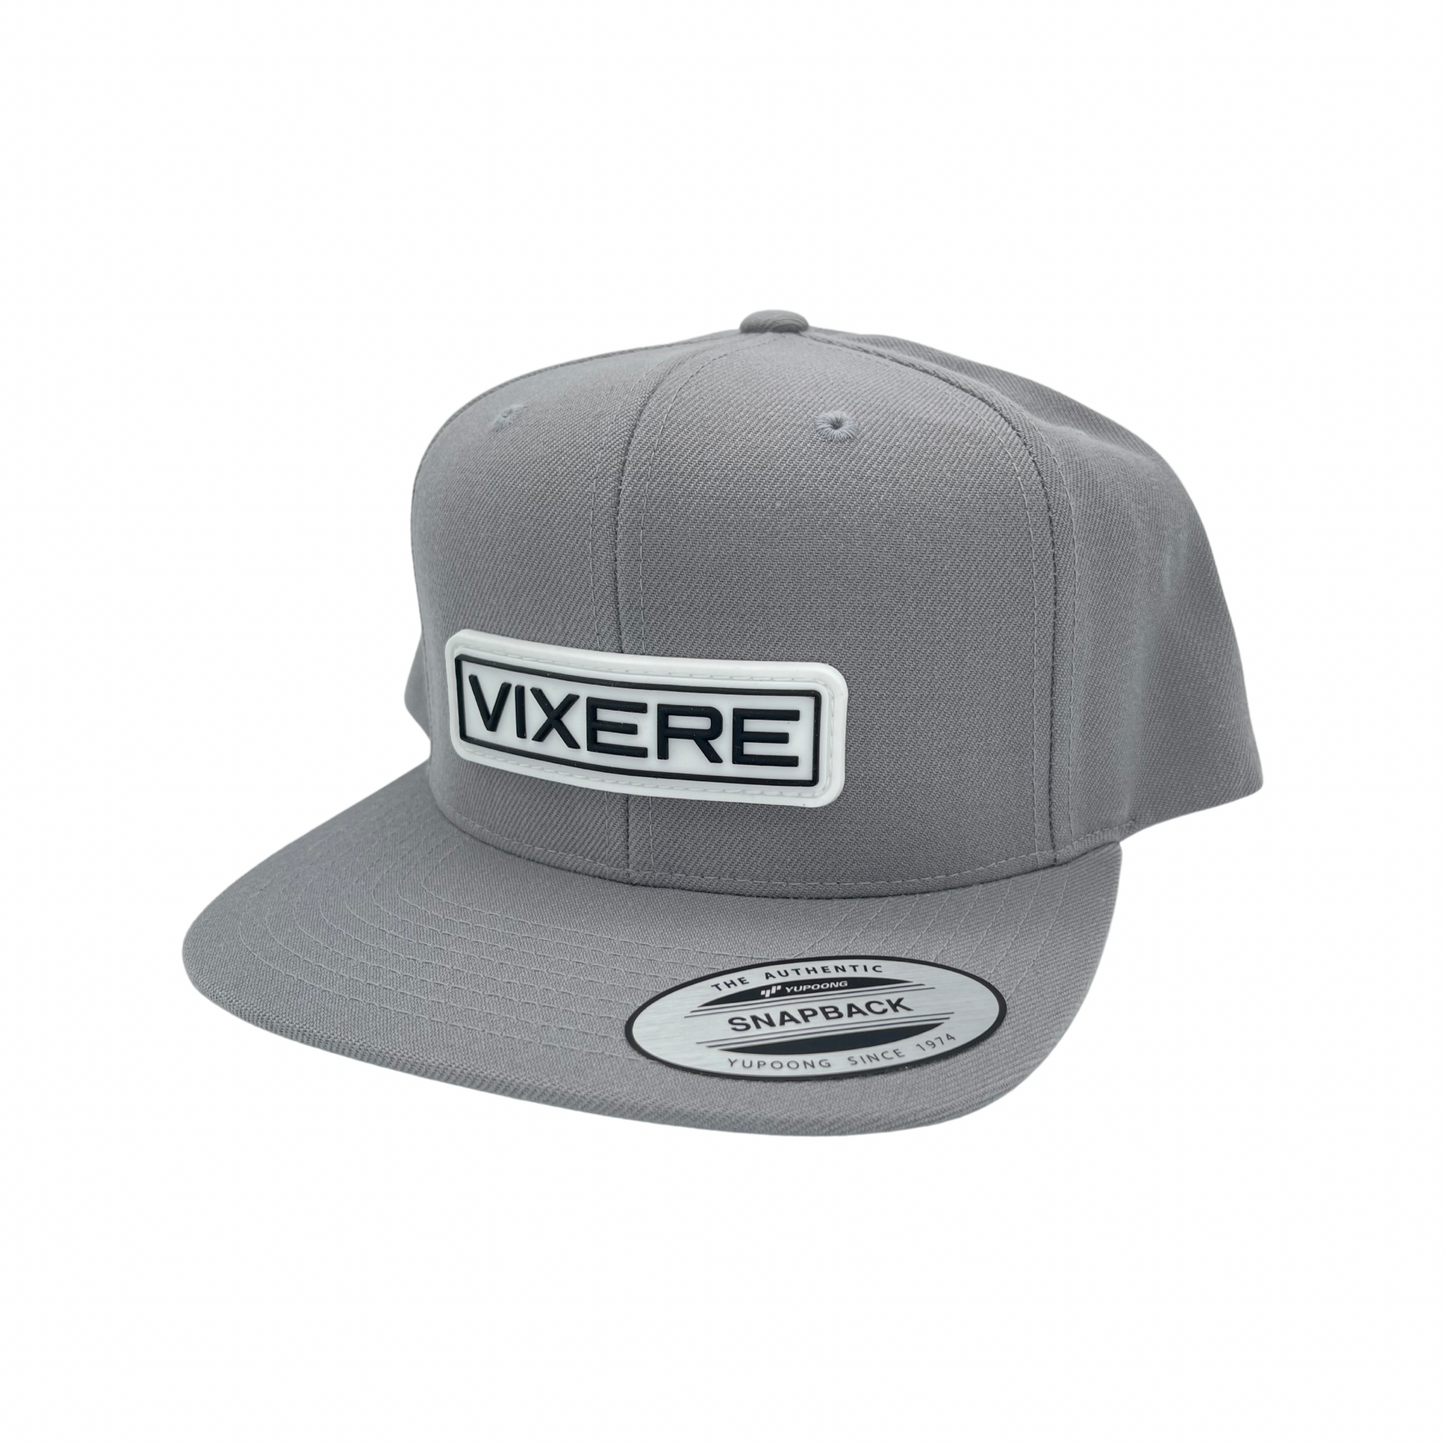 Vixere OG Classic Snapback Hats